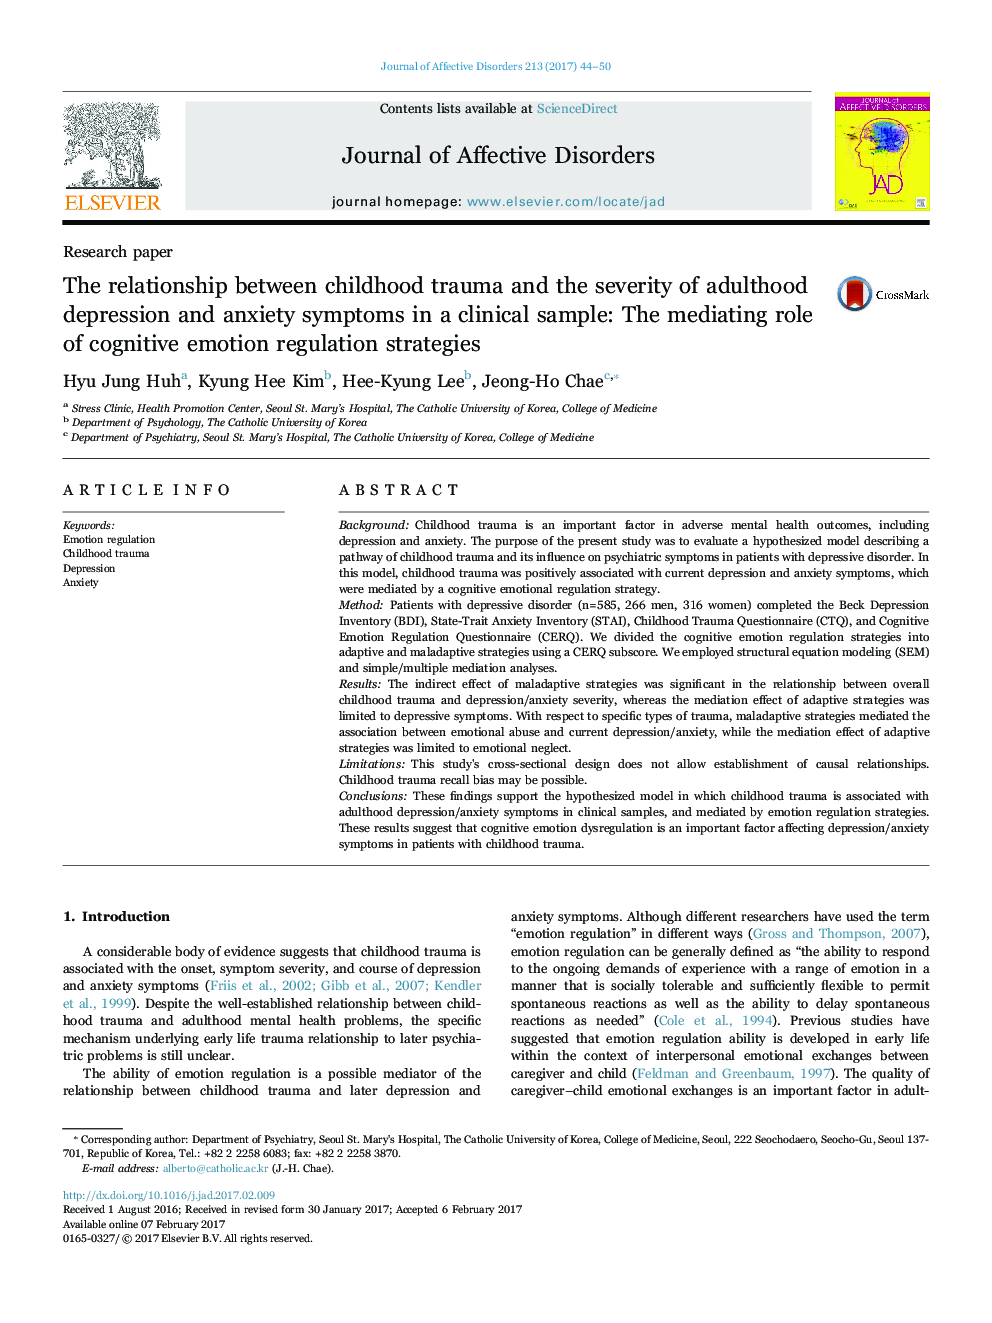 رابطه بین آسیب های دوران کودکی و شدت افسردگی بزرگسالان و علائم اضطراب در یک نمونه بالینی: نقش میانجی از استراتژی های شناختی عاطفی 